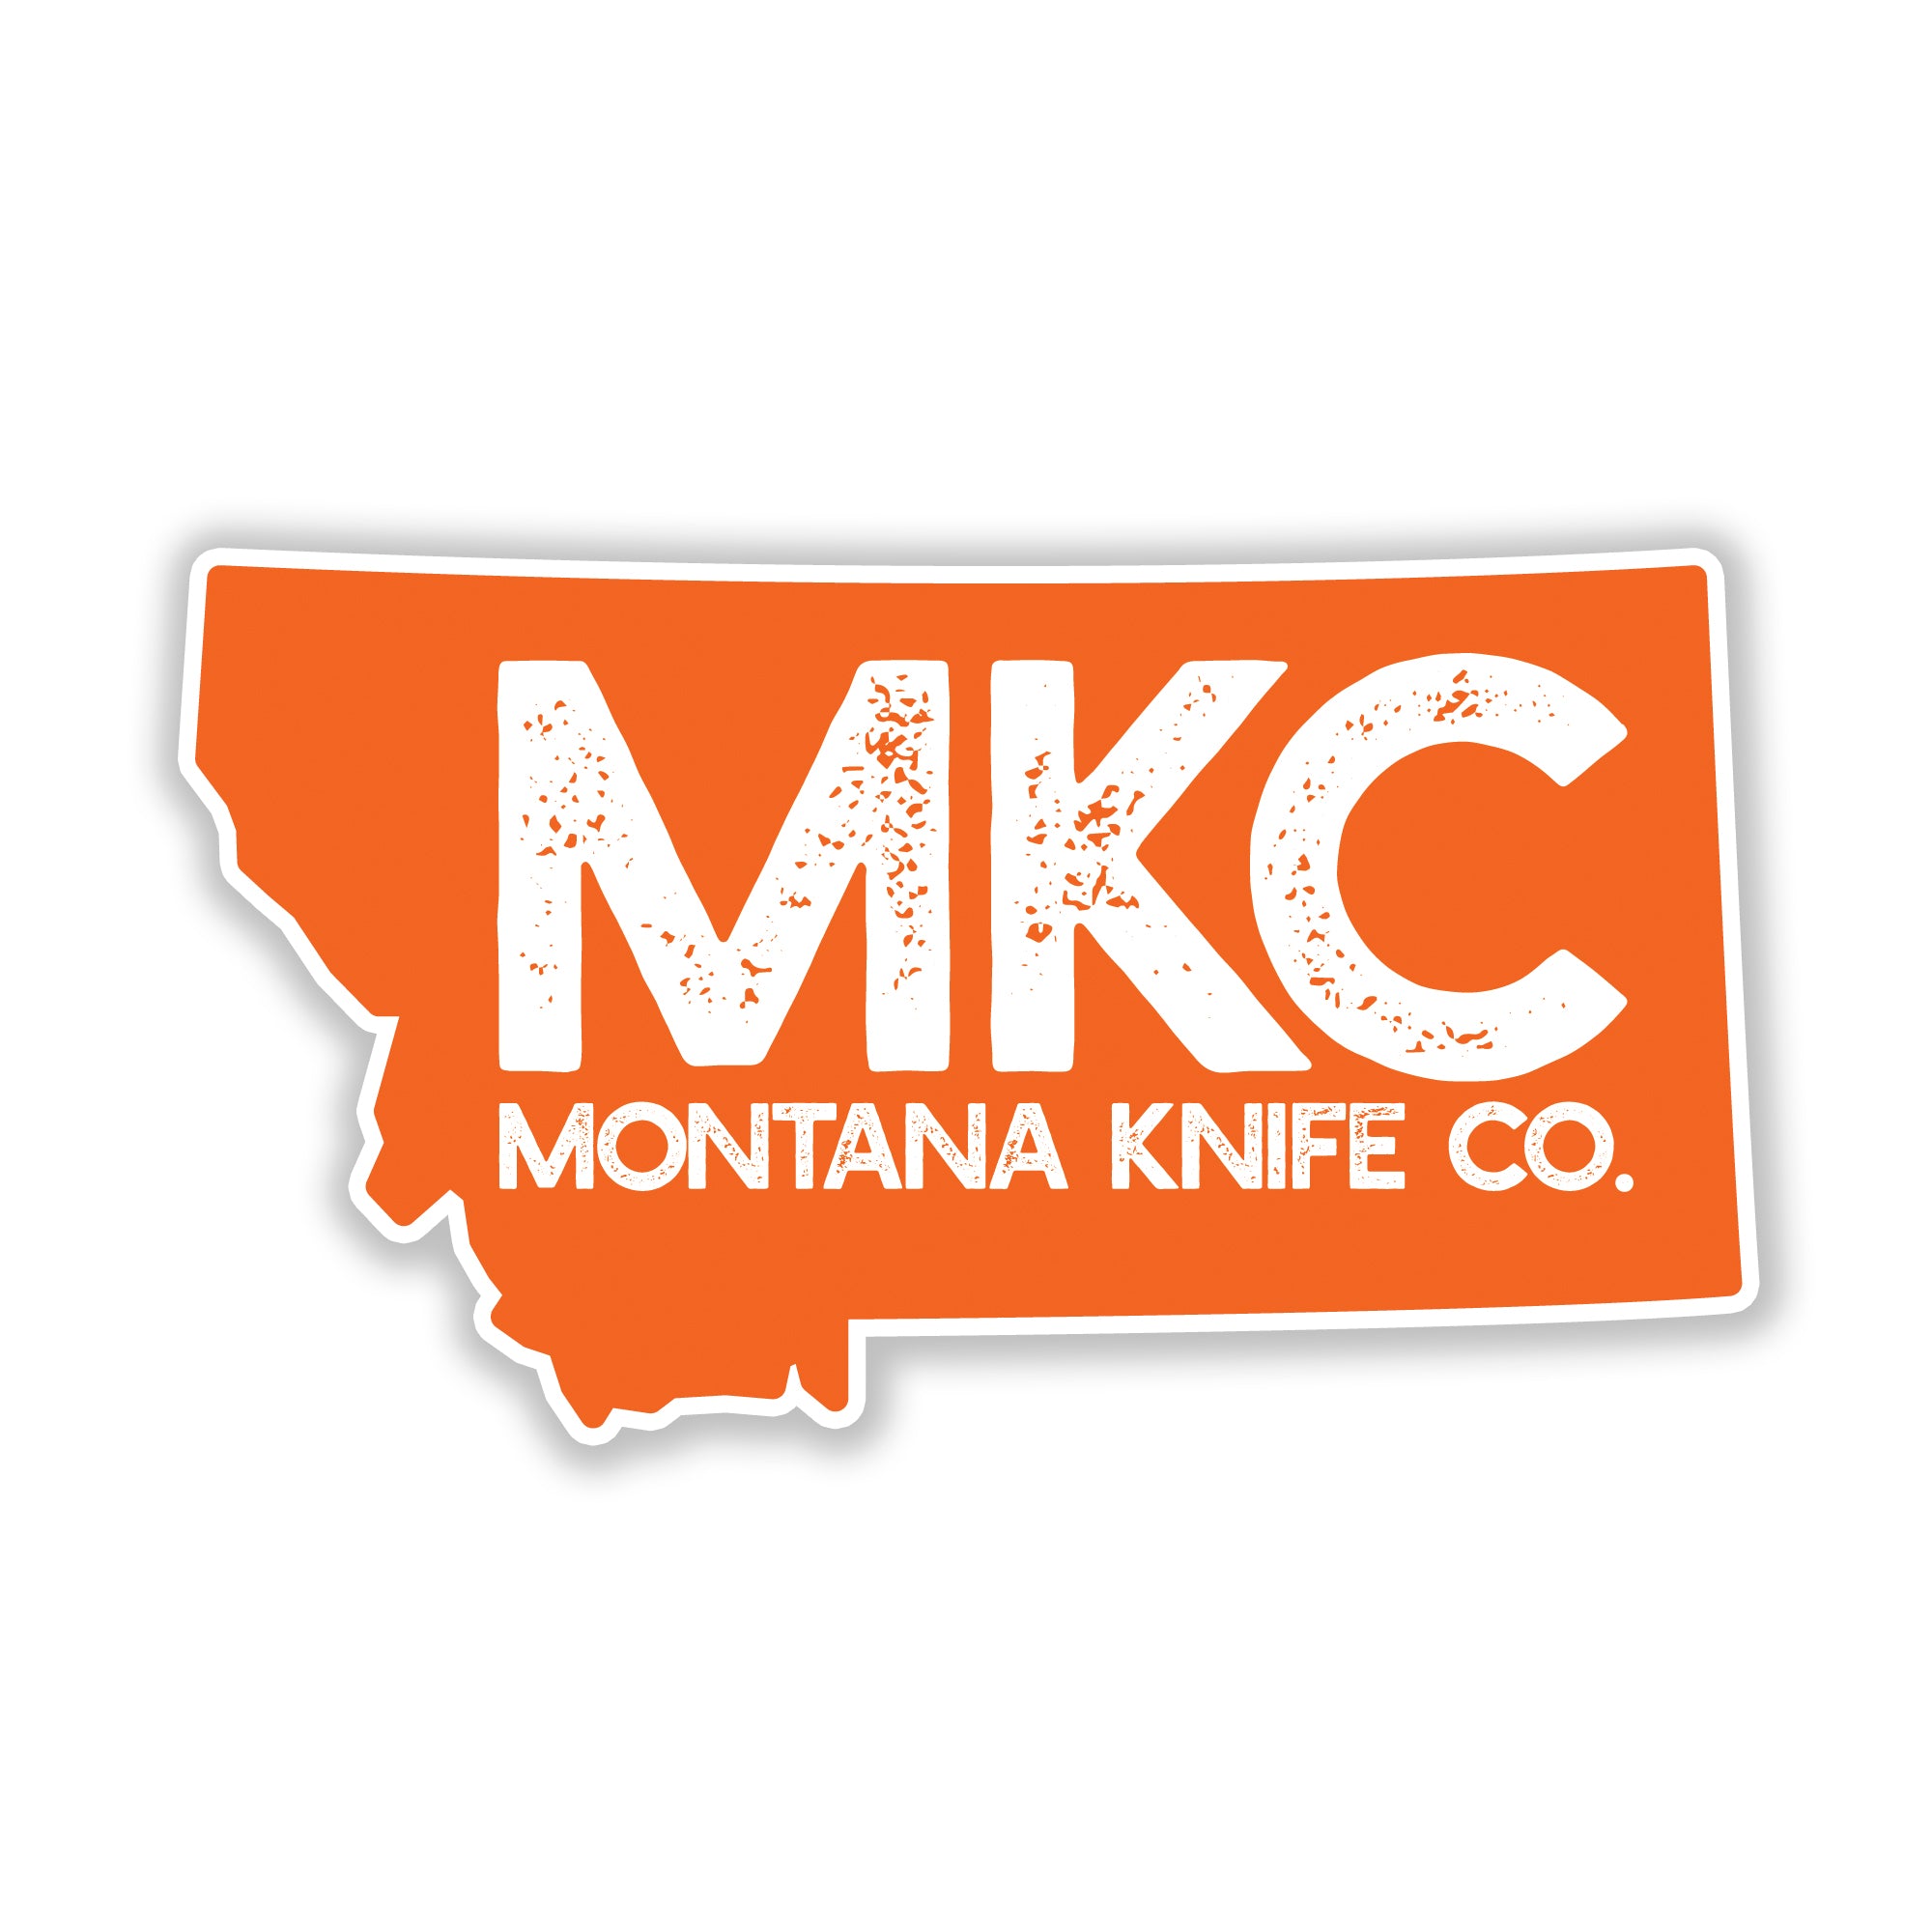 MONTANA KNIFE COMPANY DECAL